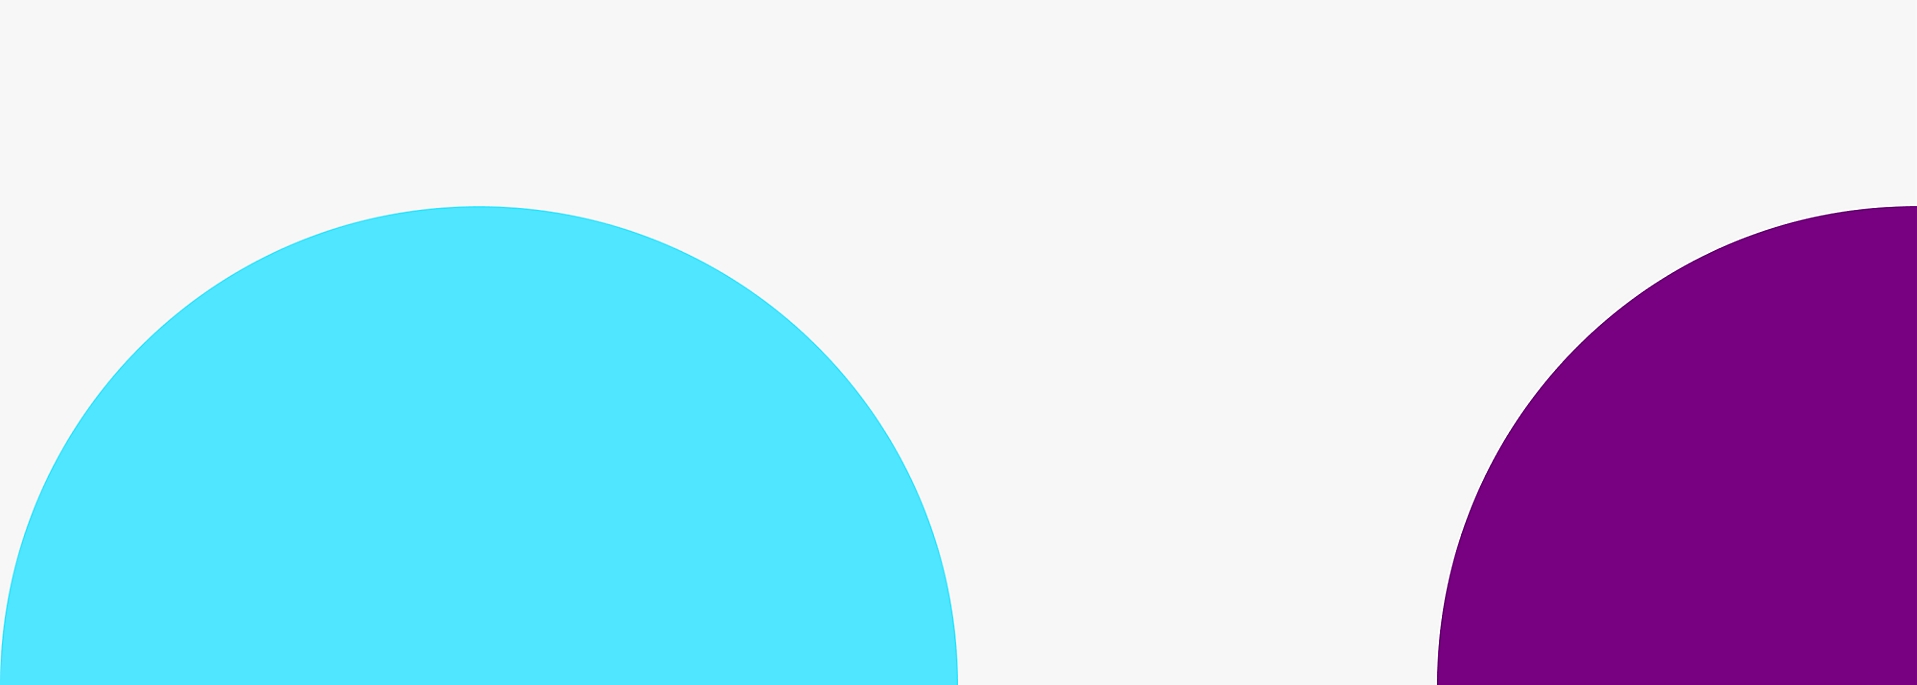 Két nagy, részlegesen átfedő kör egy kék körrel a bal oldalon és egy lila körrel a jobb oldalon 